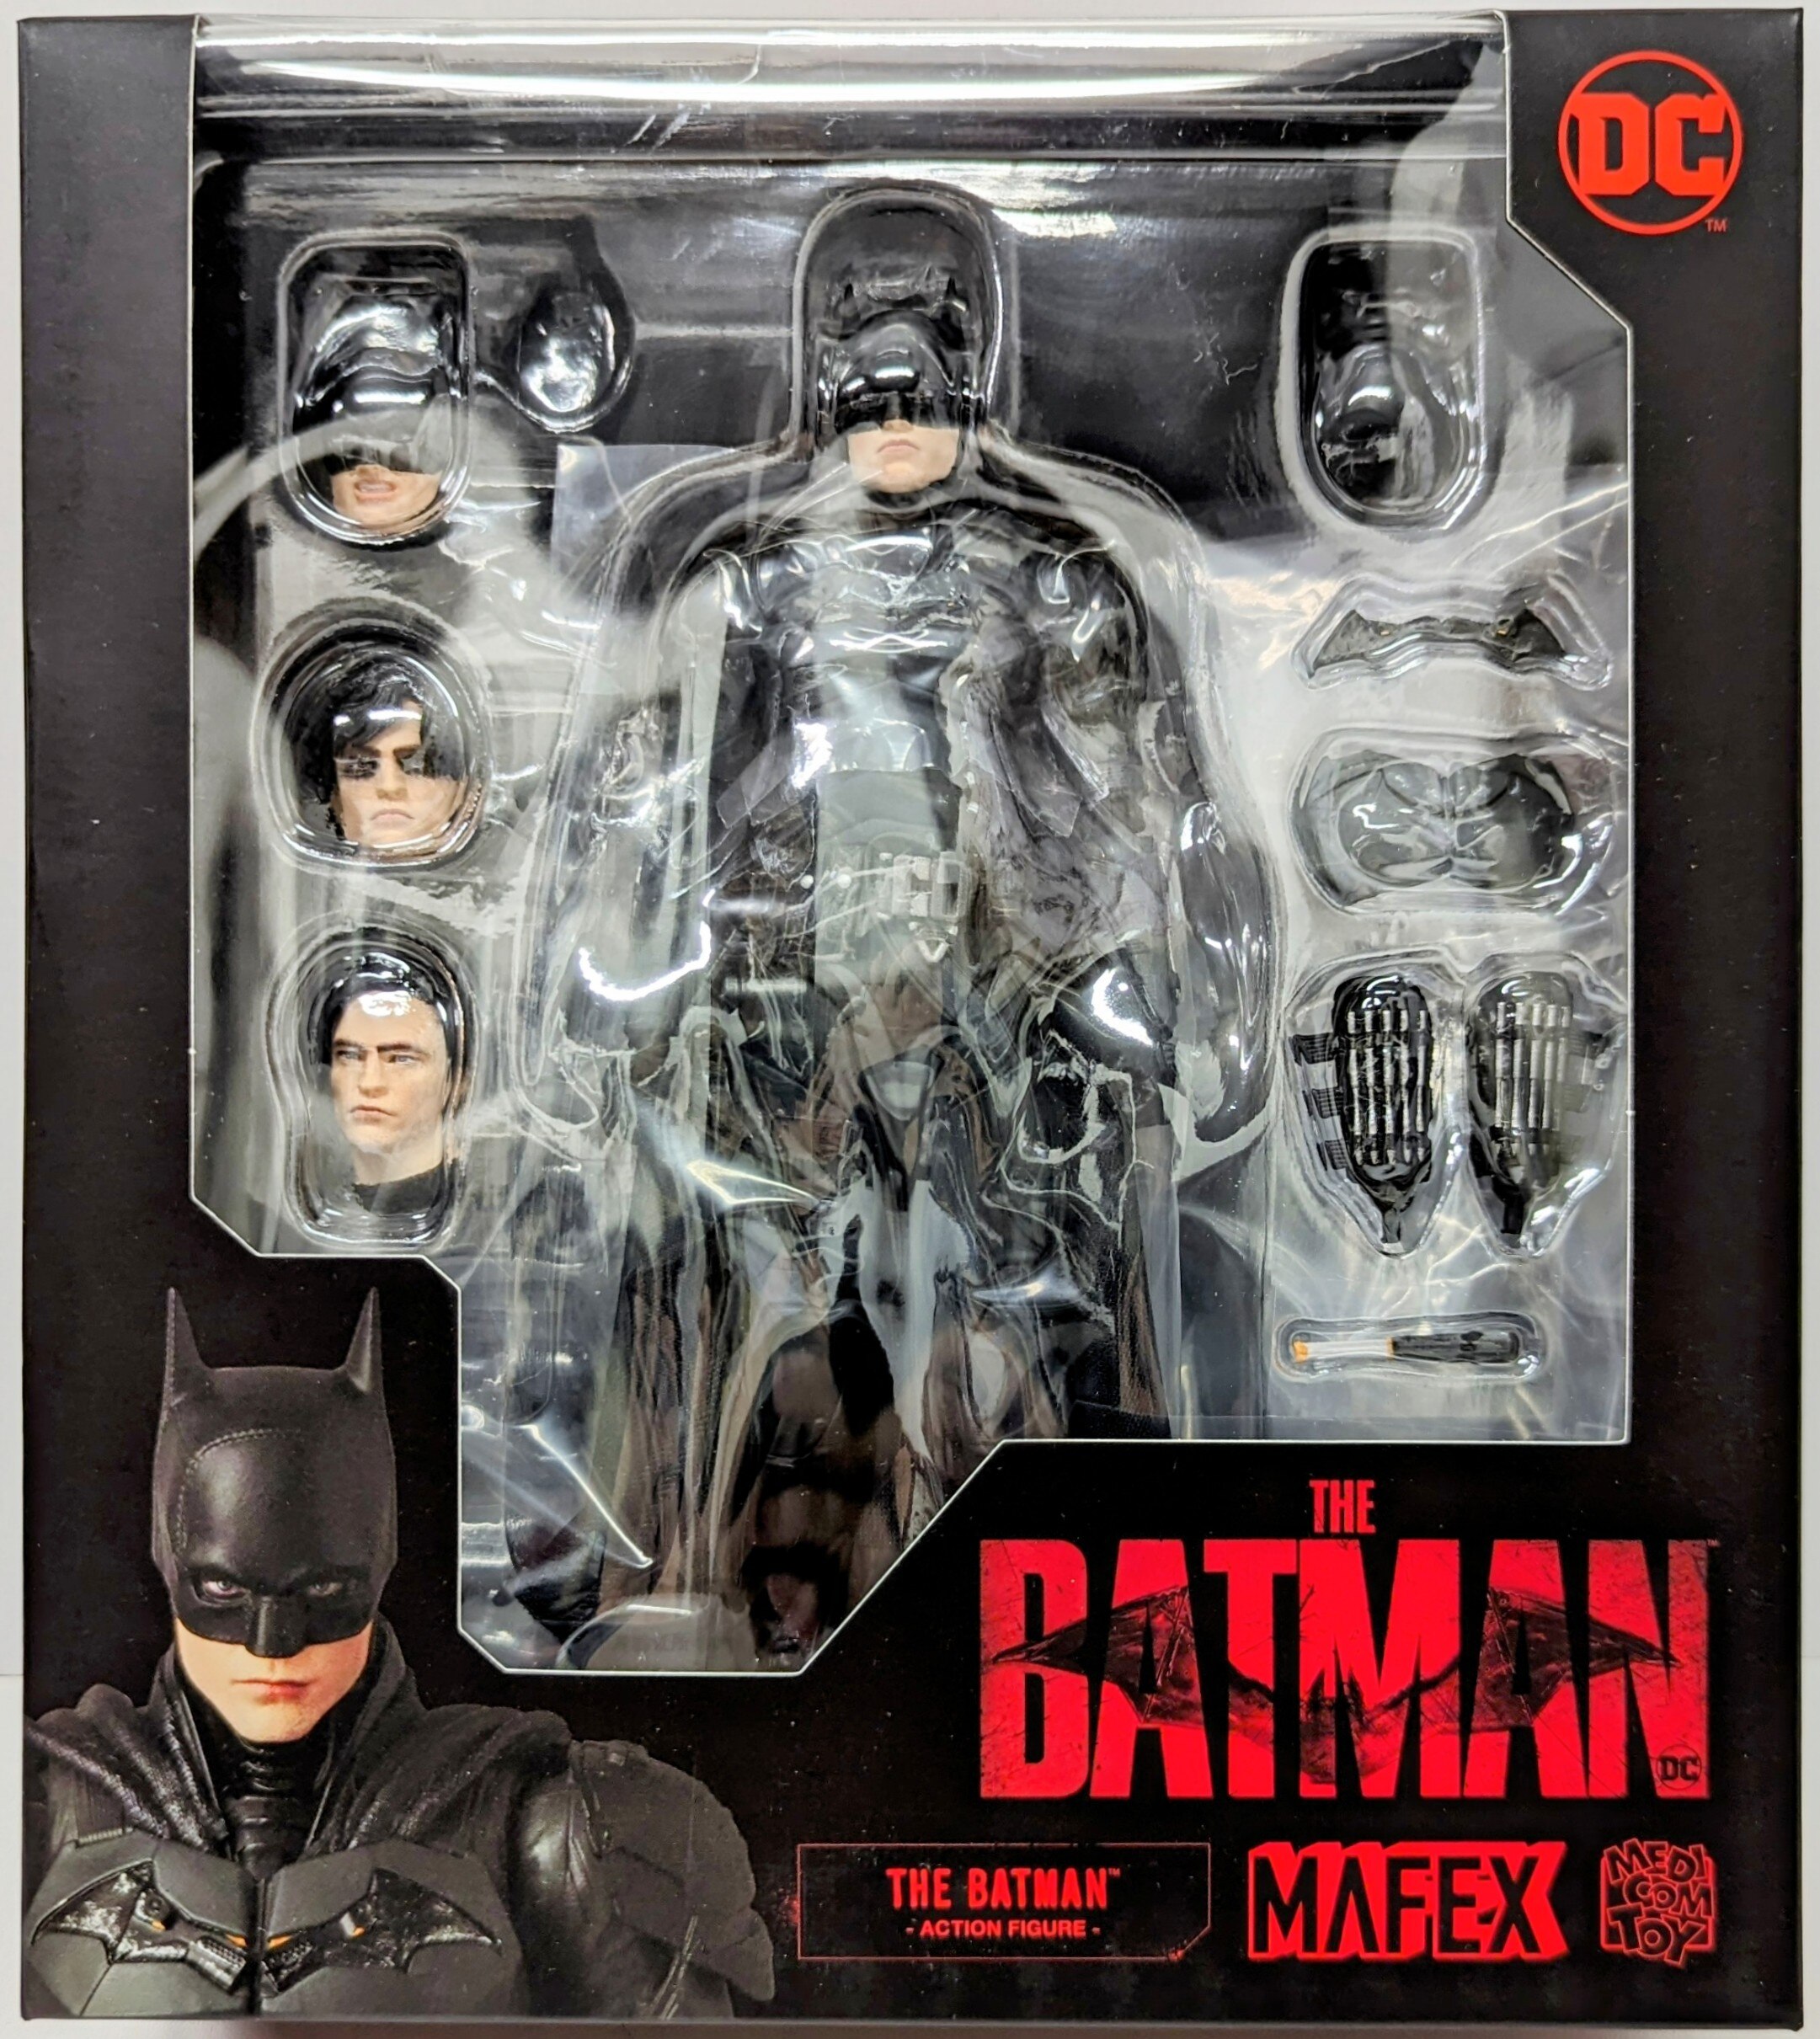 MAFEX No.188 THE BATMAN ザ・バットマン - アメコミ